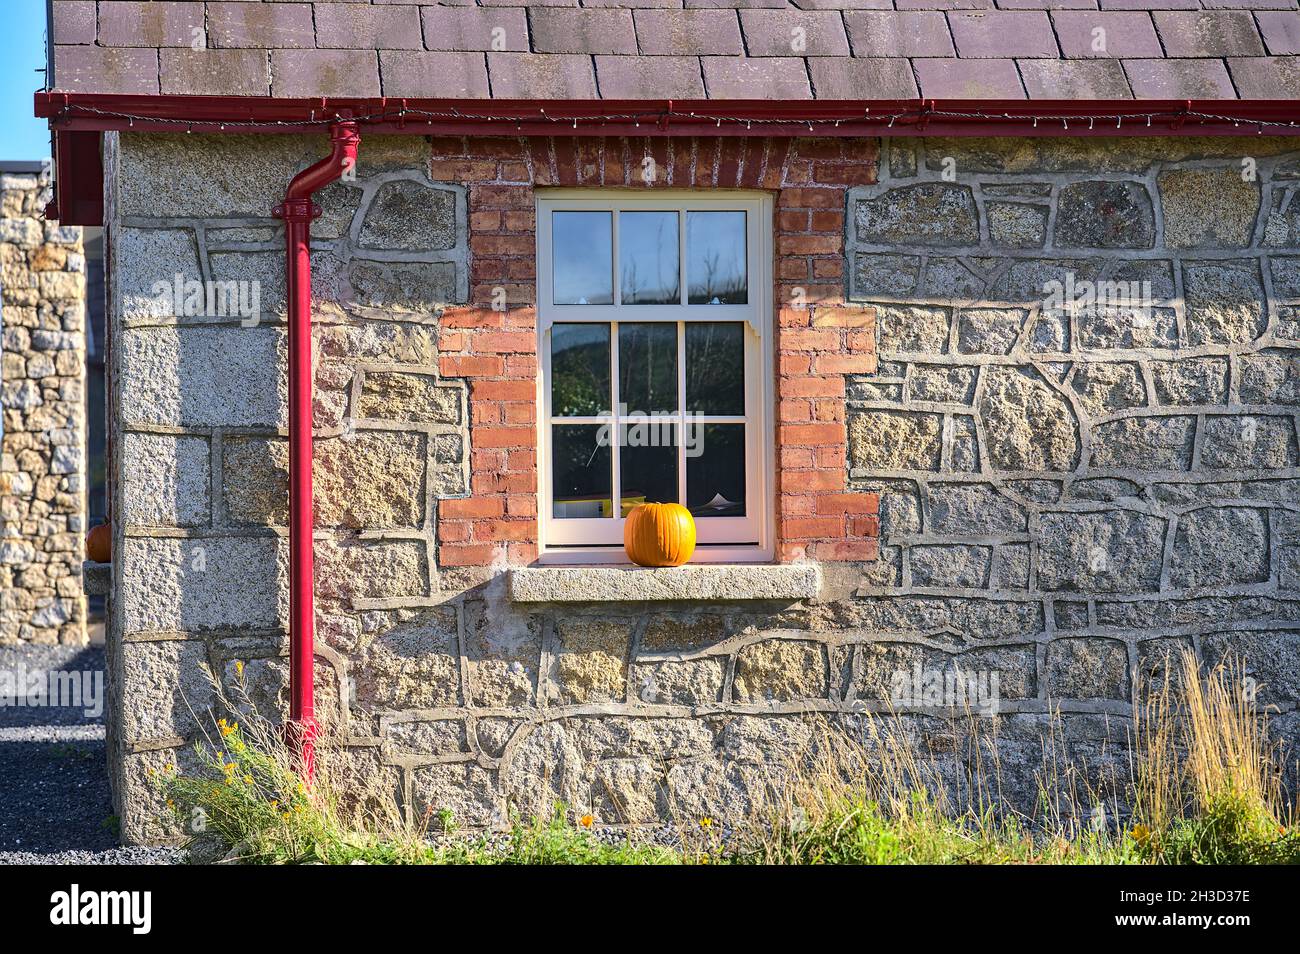 Belle vue rapprochée de la façade typique de la maison de campagne irlandaise avec la citrouille sur le seuil de la fenêtre le jour d'automne ensoleillé.Halloween 2021 décorations Banque D'Images